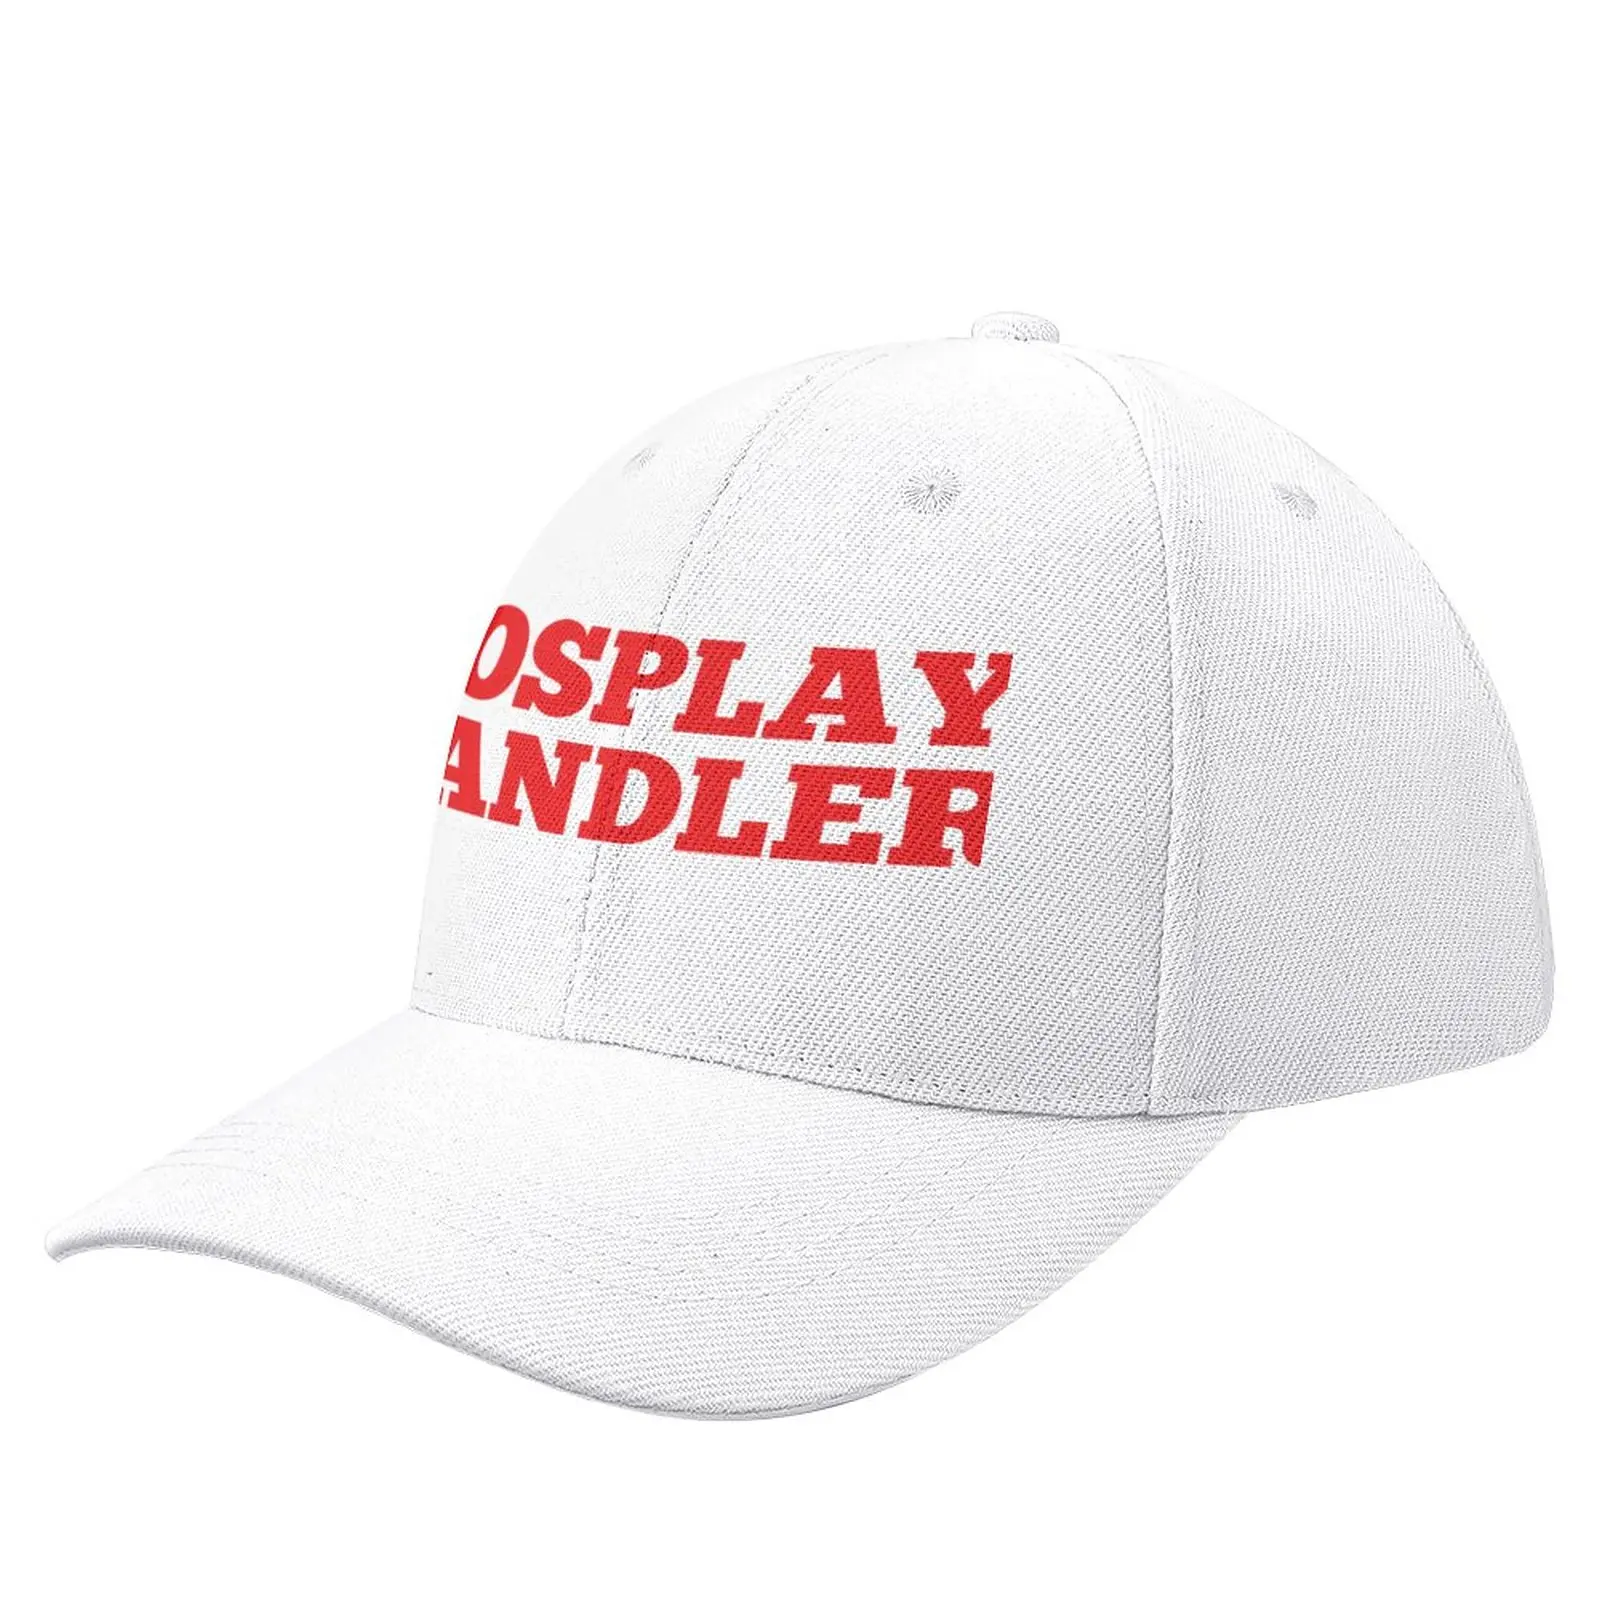 Cosplay topi bisbol Handler, topi kuda hitam, topi pantai, topi wanita